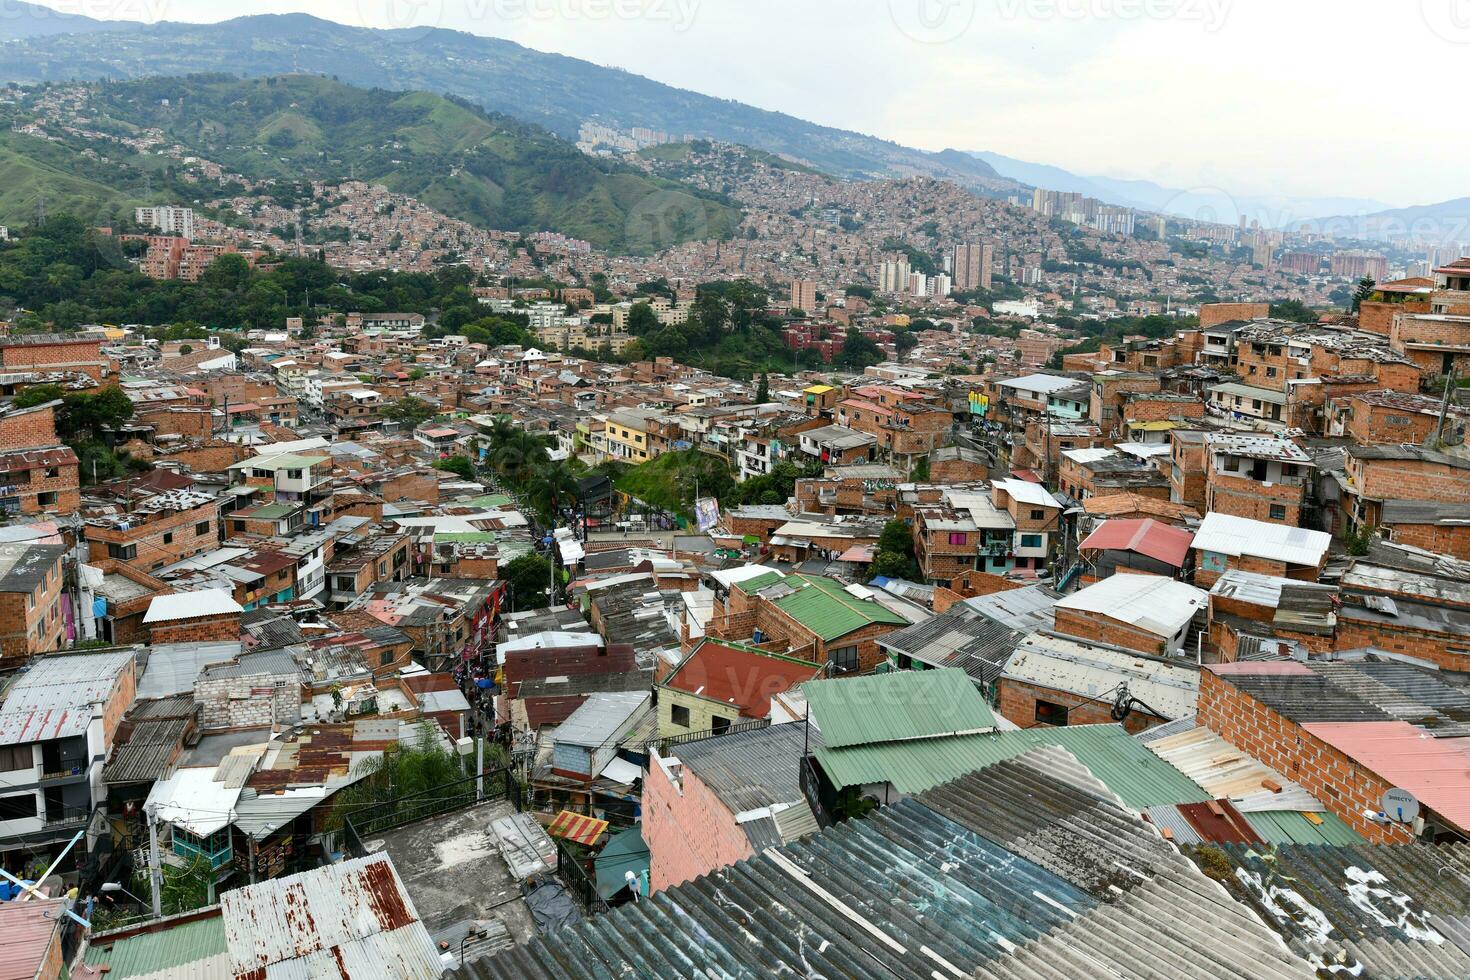 Comuna 13 - Medellin, Colombia photo